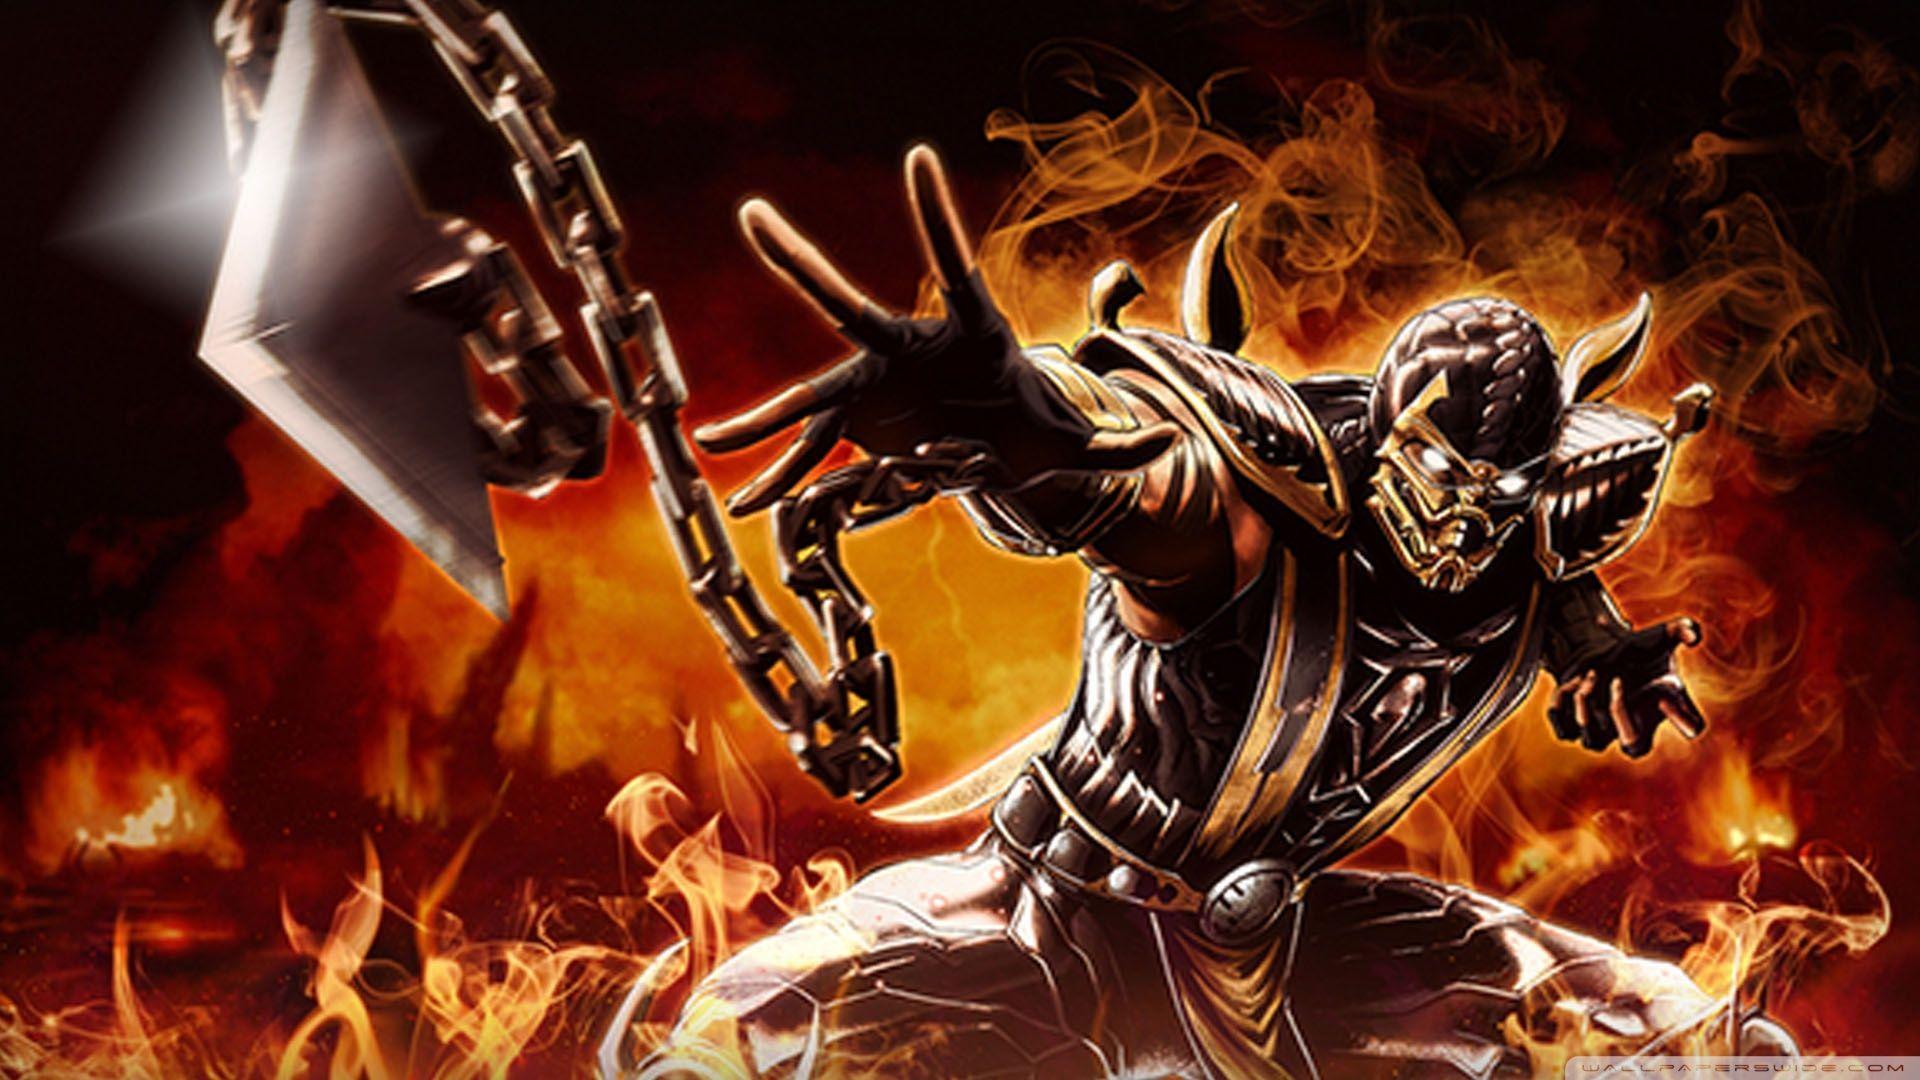 Desktop Image of Mortal Kombat. Mortal Kombat Wallpaper